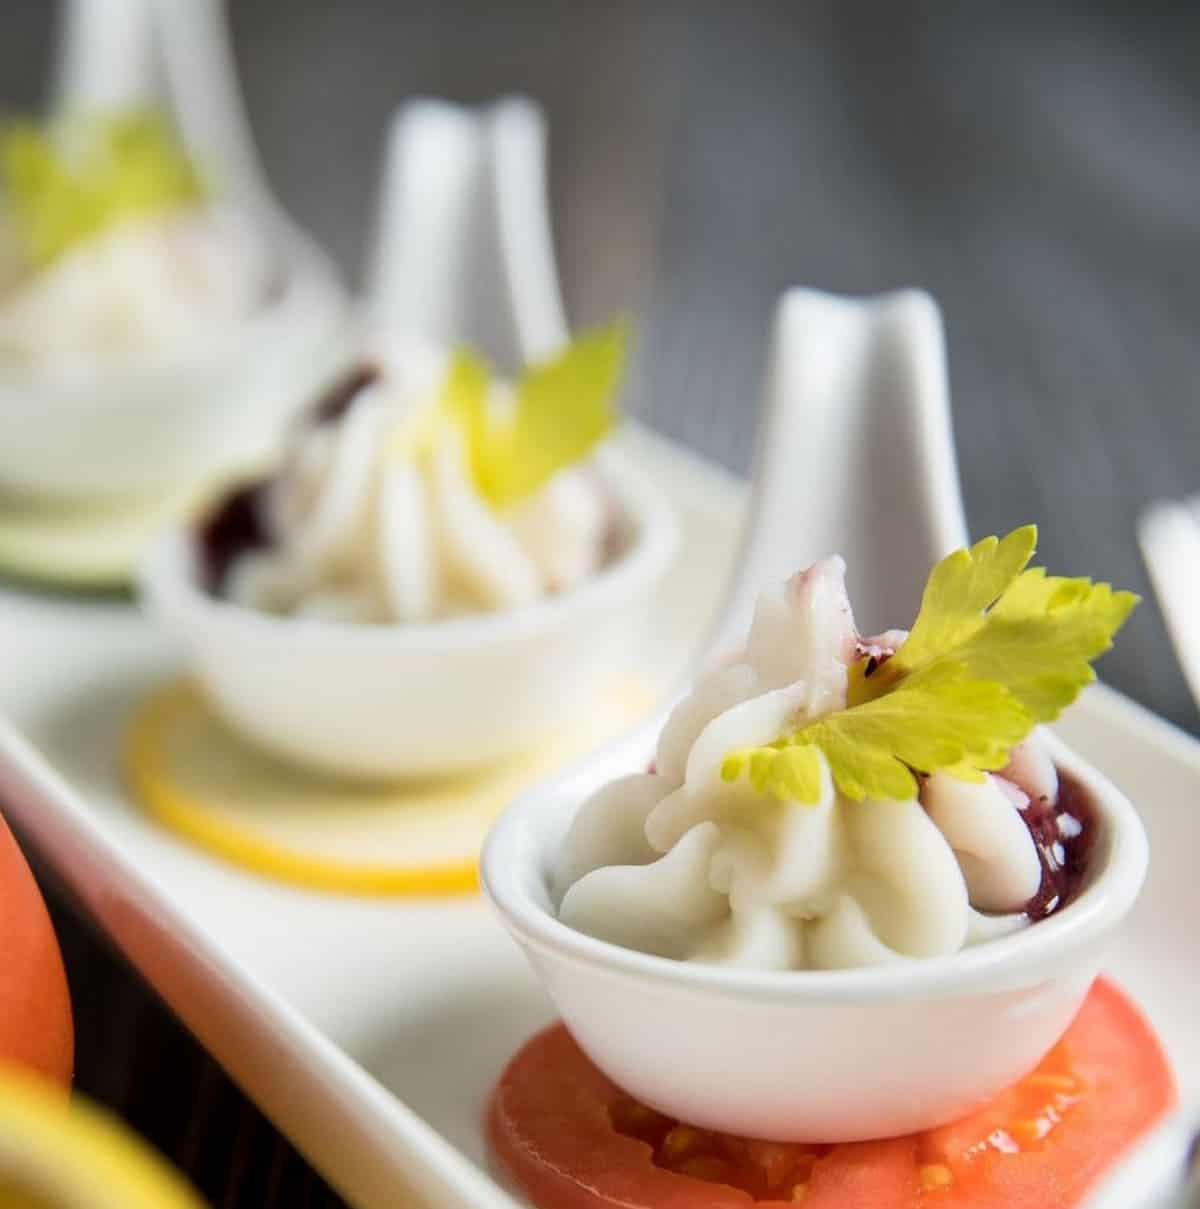 An image of vegan dumplings in serving spoons.